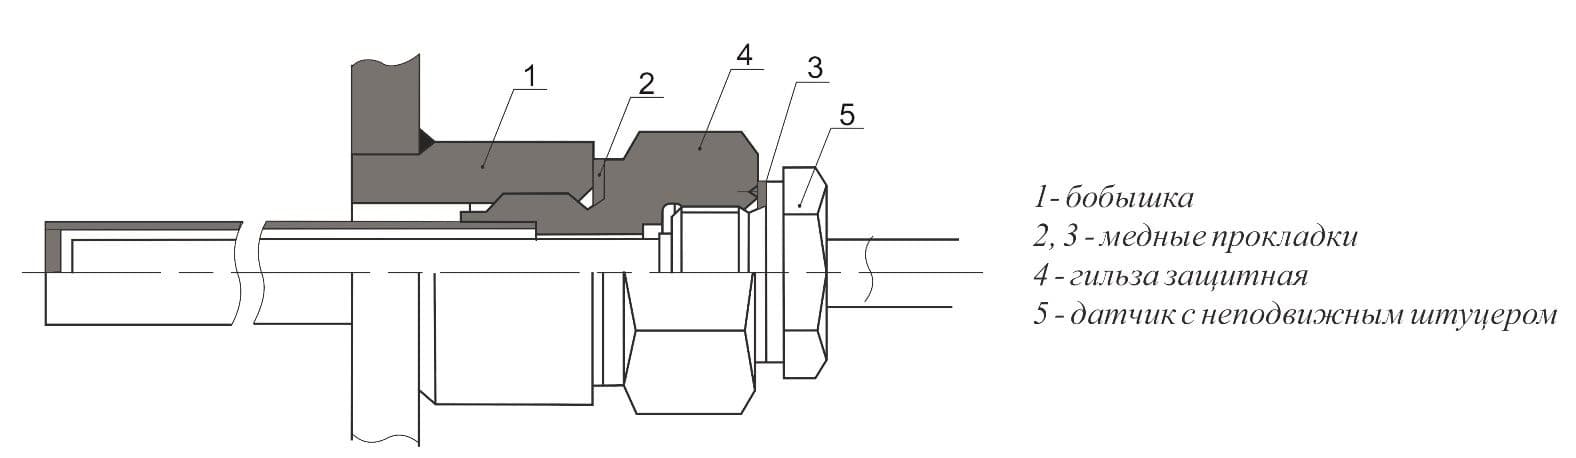 схема установки датчиков с неподвижным штуцером с применением бобышки и защитных гильз - ТД Энергоприбор